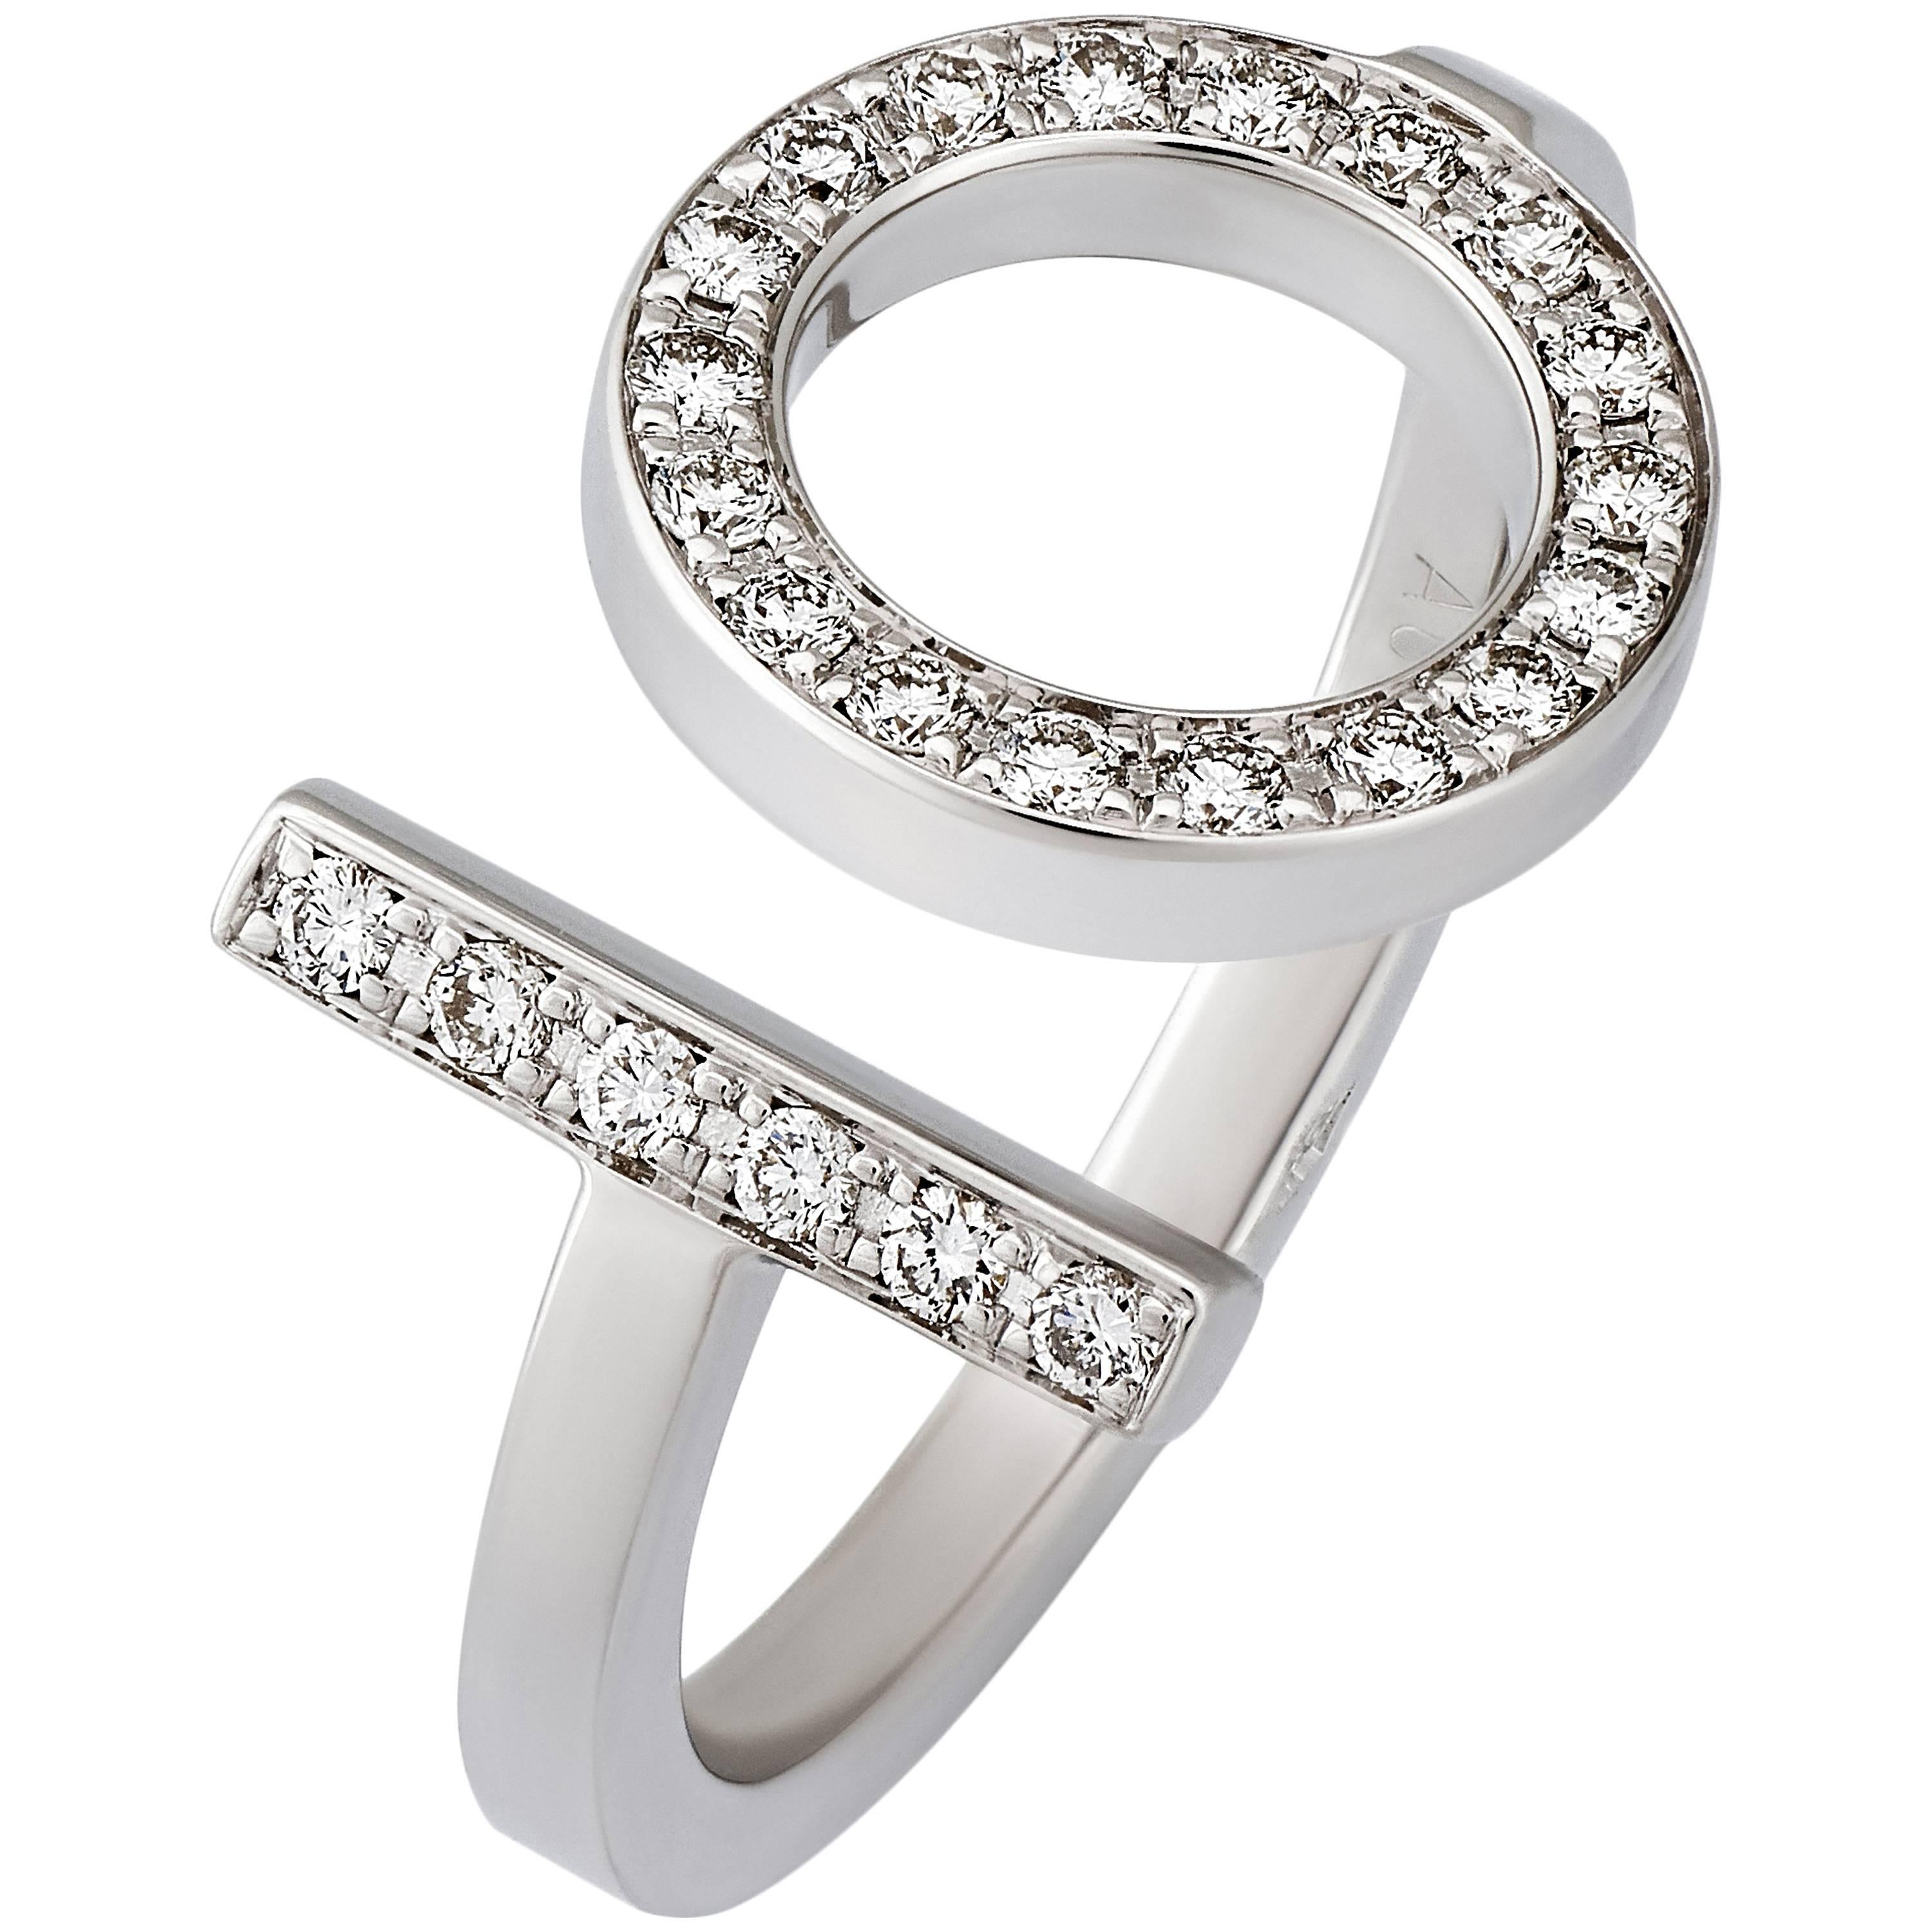 Hermes 18K White Gold Diamond Ring Size: 6.25